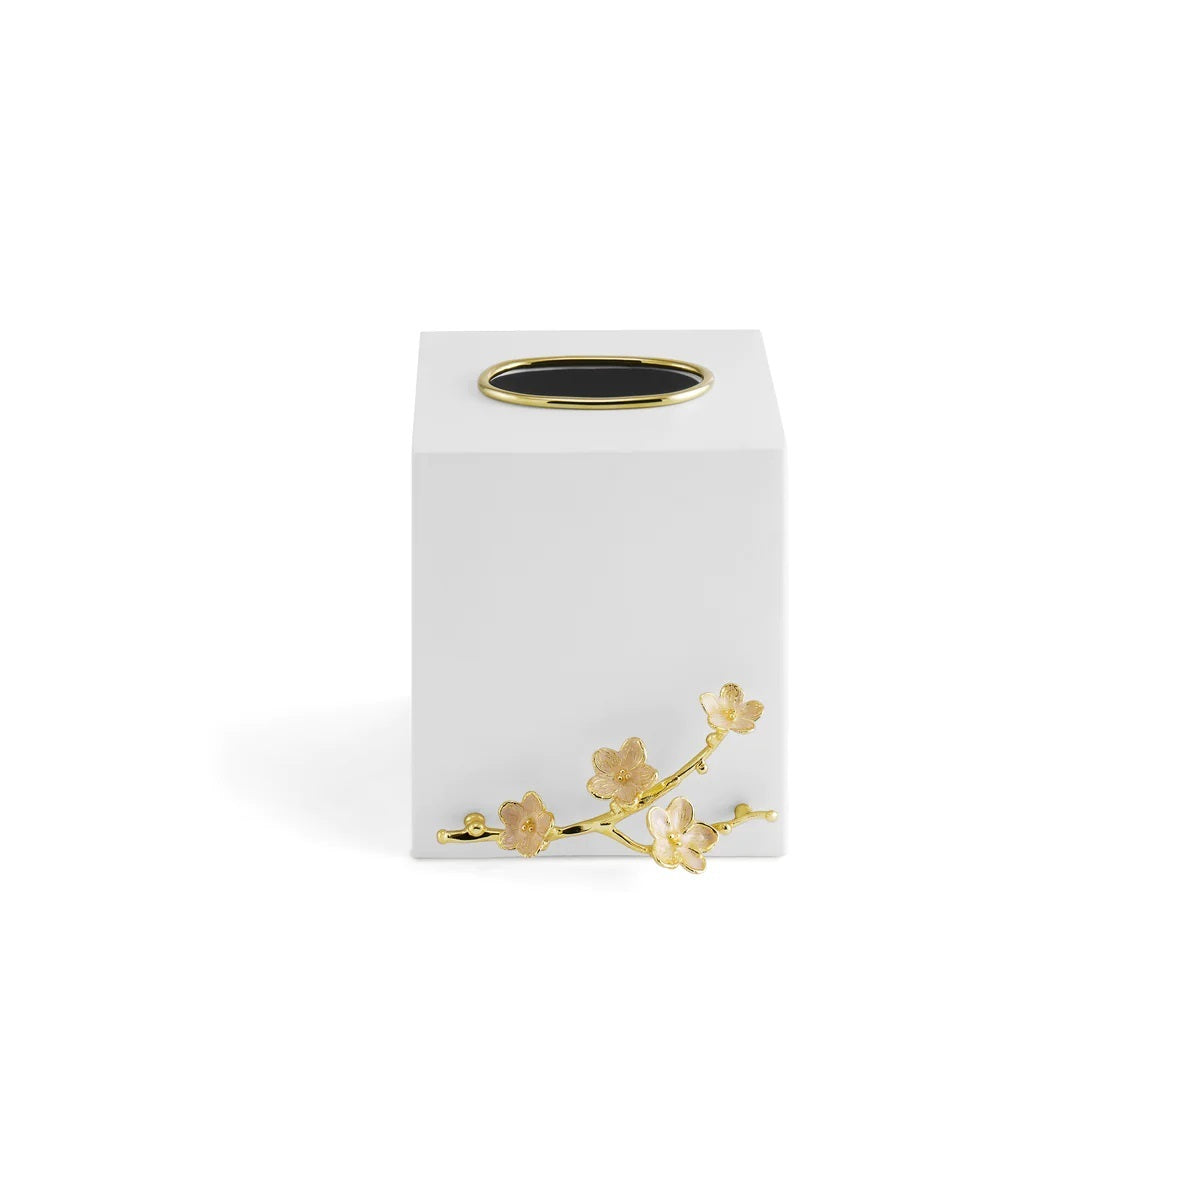 Cherry Blossom Tissue Box Holder